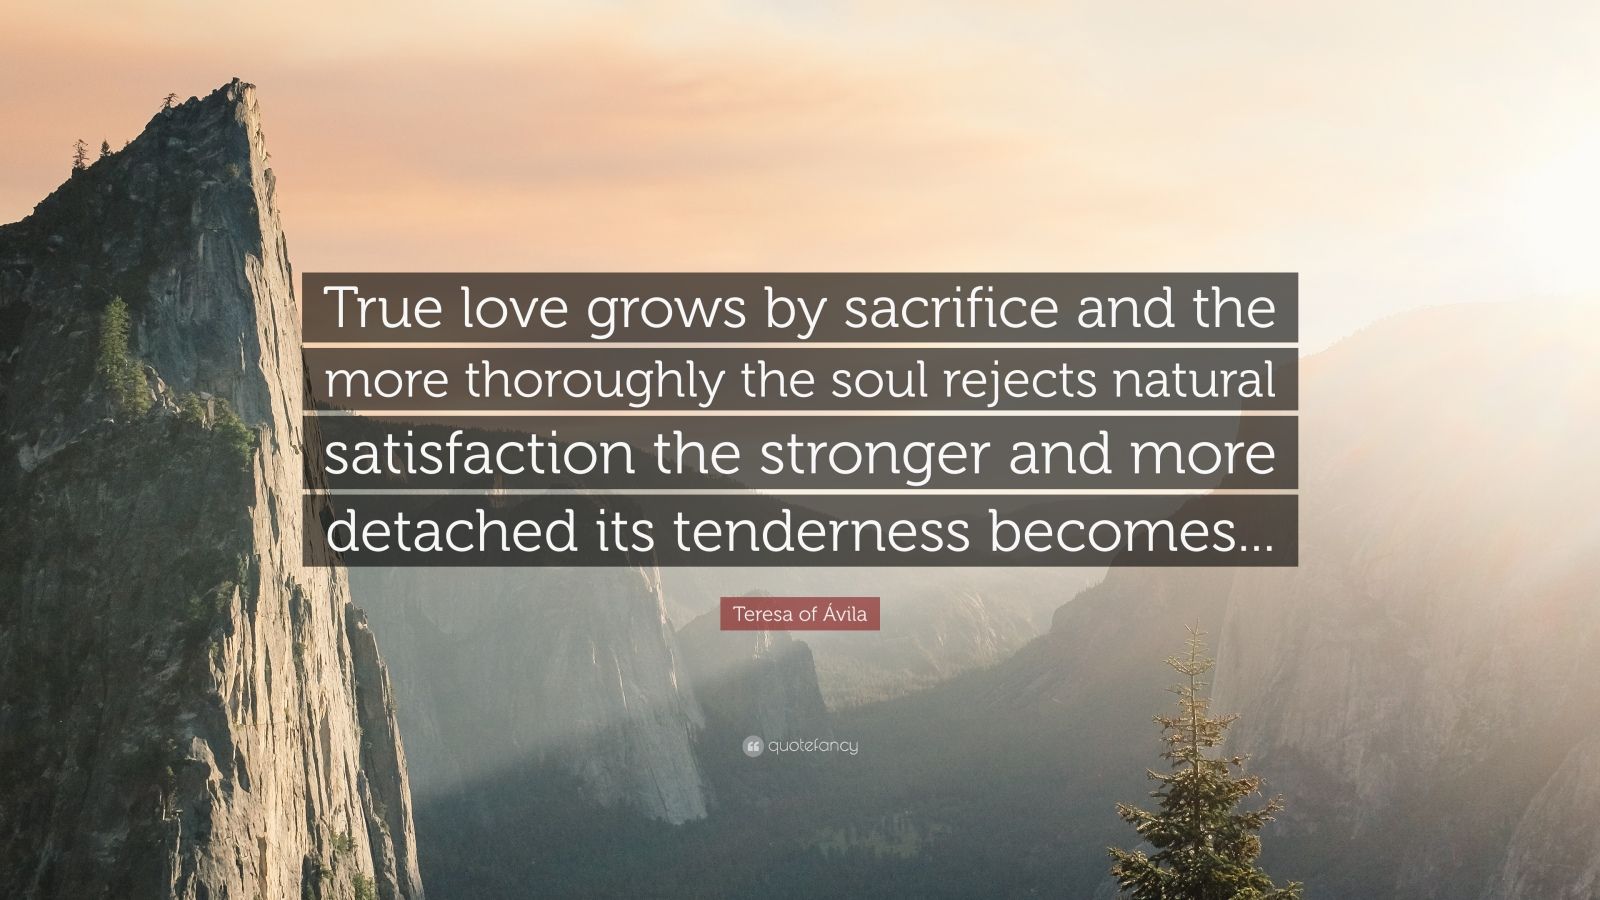 Teresa of vila Quote “True love grows by sacrifice and the more thoroughly the